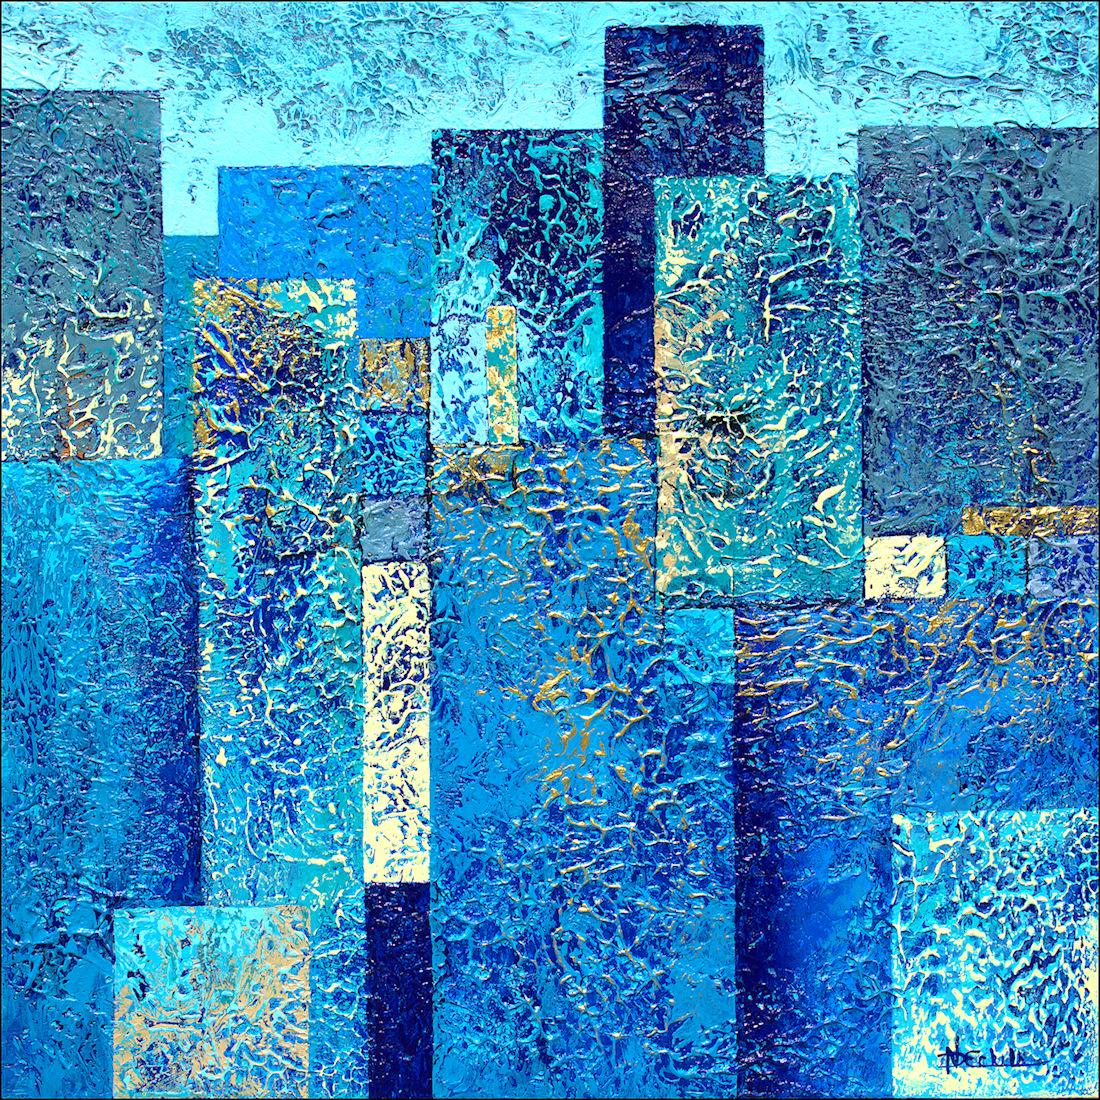 Nancy Eckels Abstract Painting – "City Glitz"  Abstraktes Mixed Media mit strukturierten Blautönen, Grüntönen und metallischem Gold